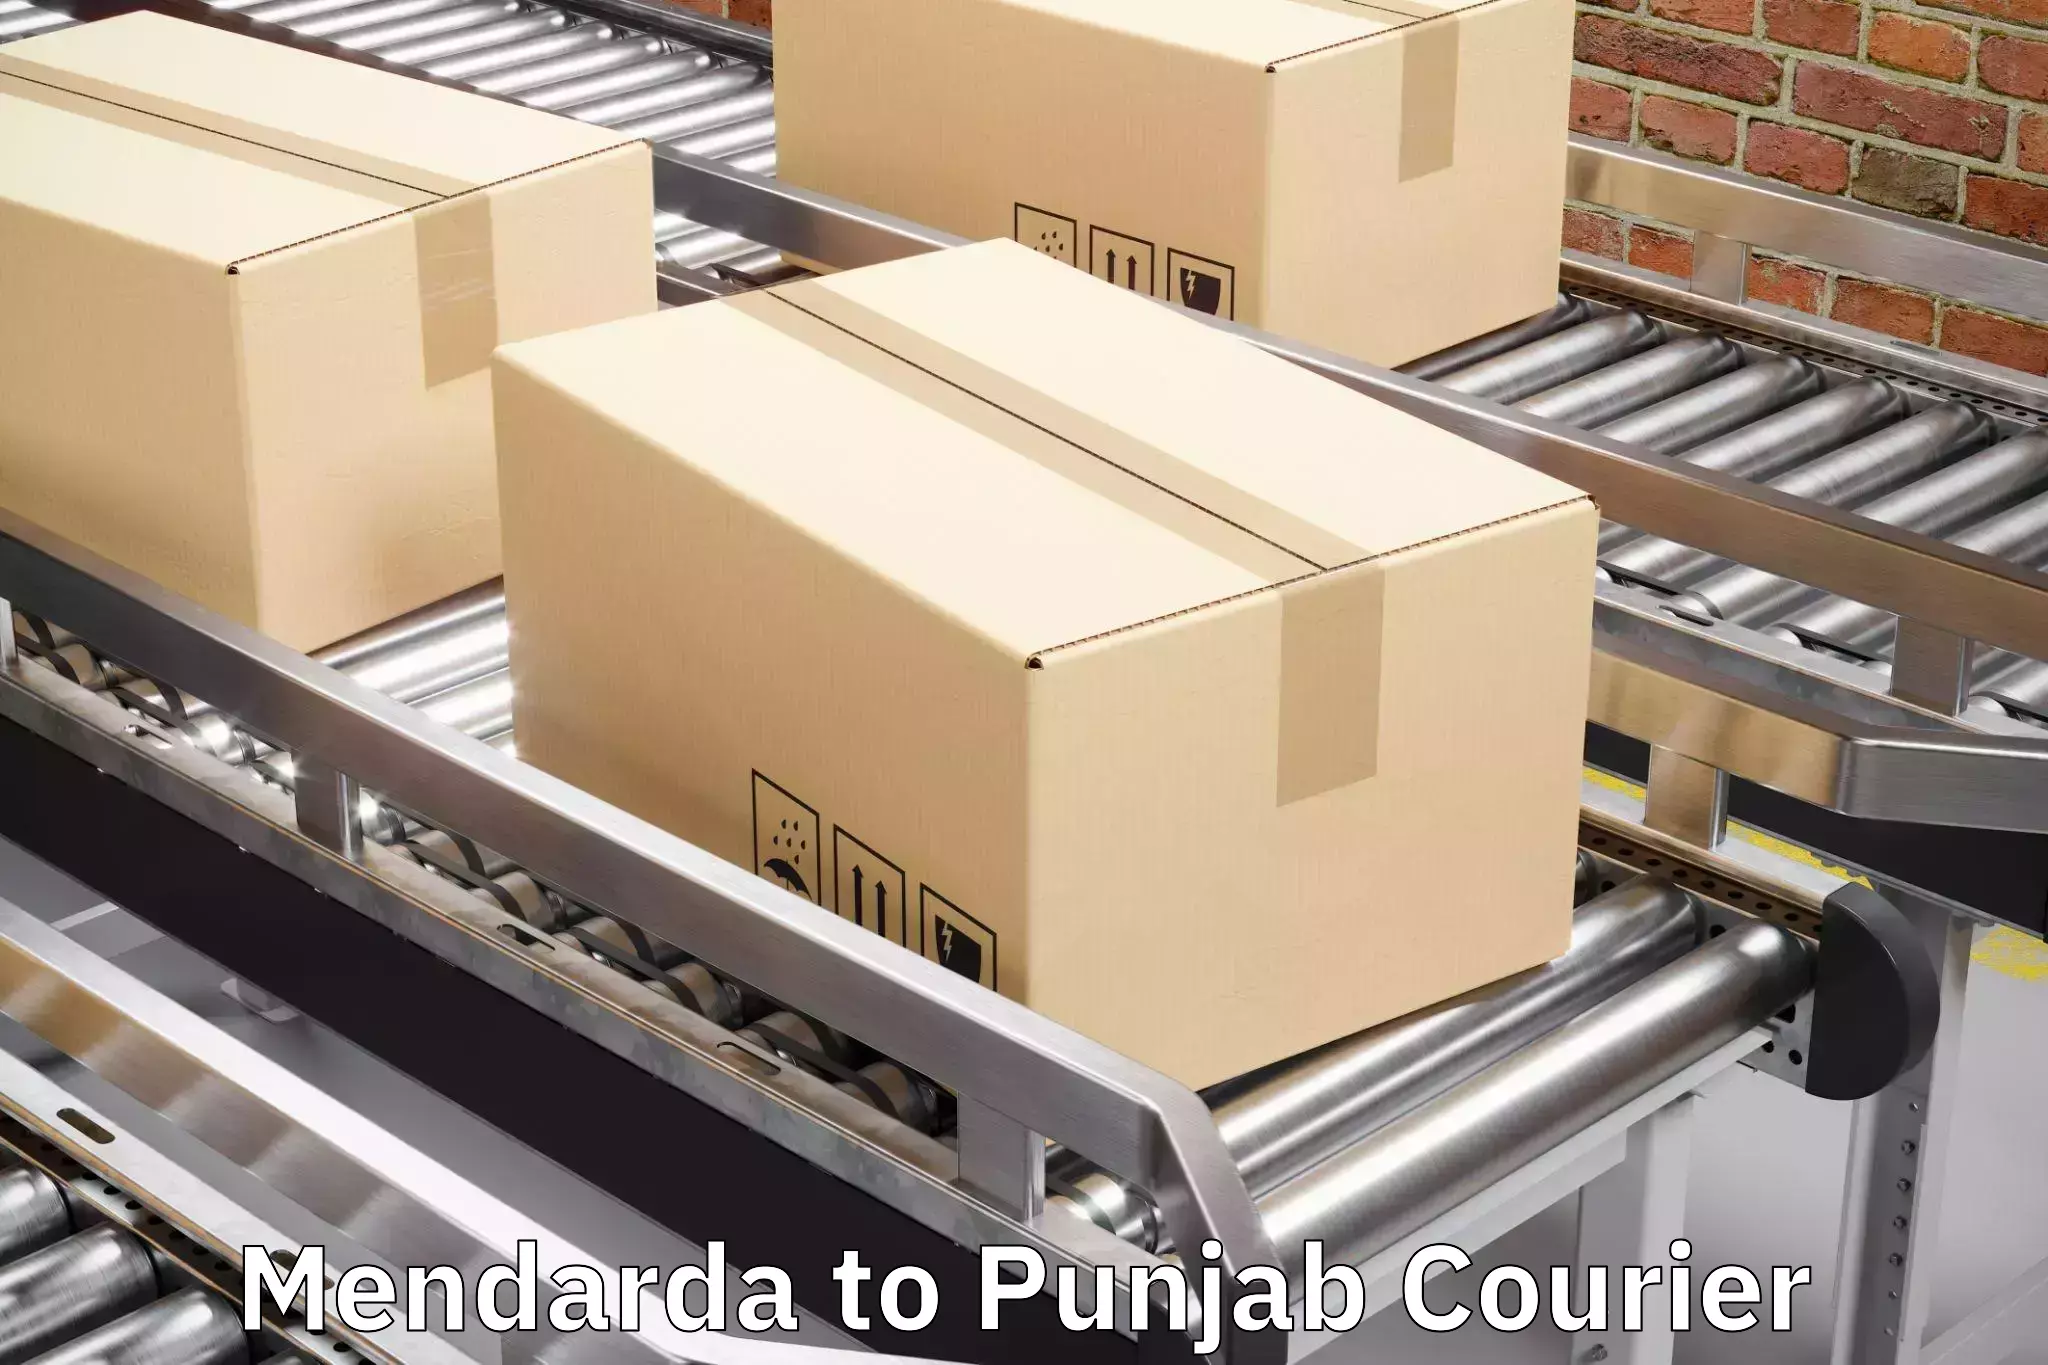 Luggage transport logistics Mendarda to Central University of Punjab Bathinda